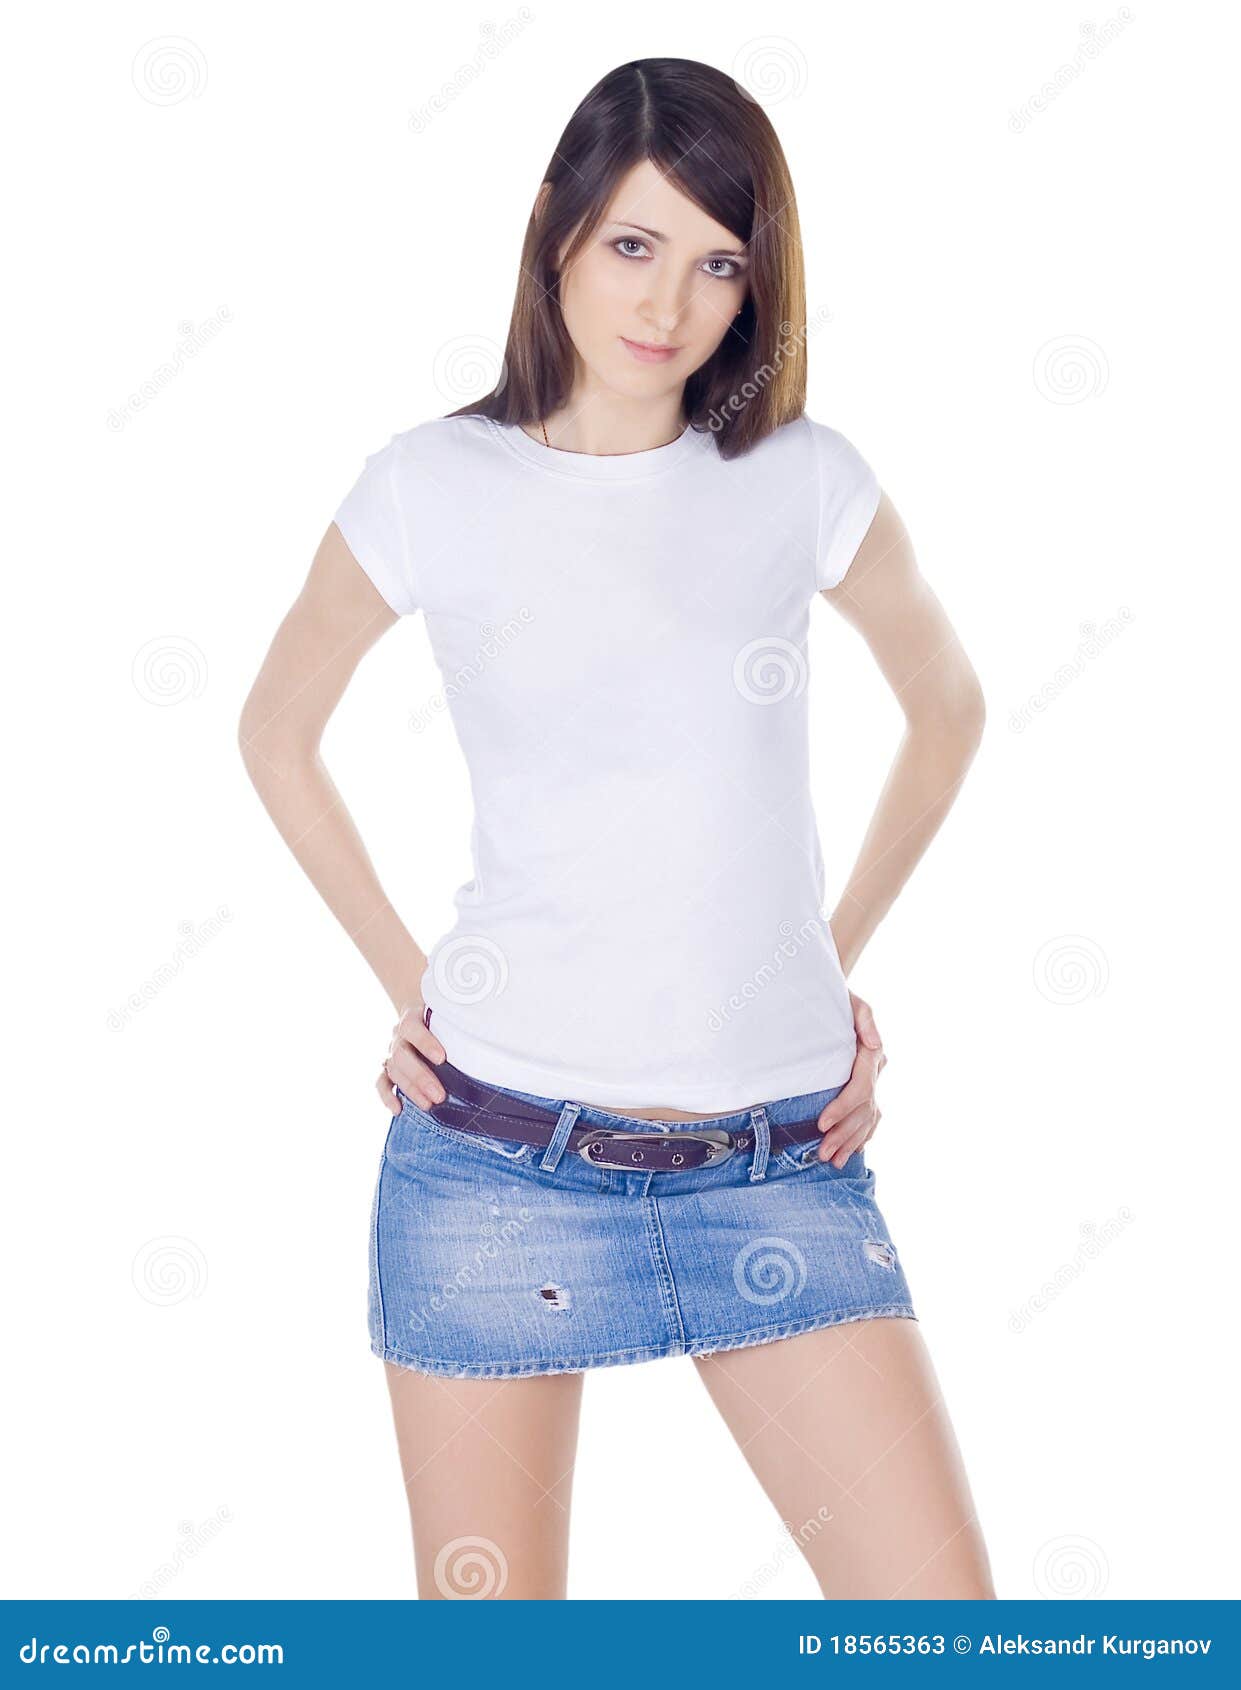 Lovely Brunette In Denim Skirt Stock Photos - Image: 18565363